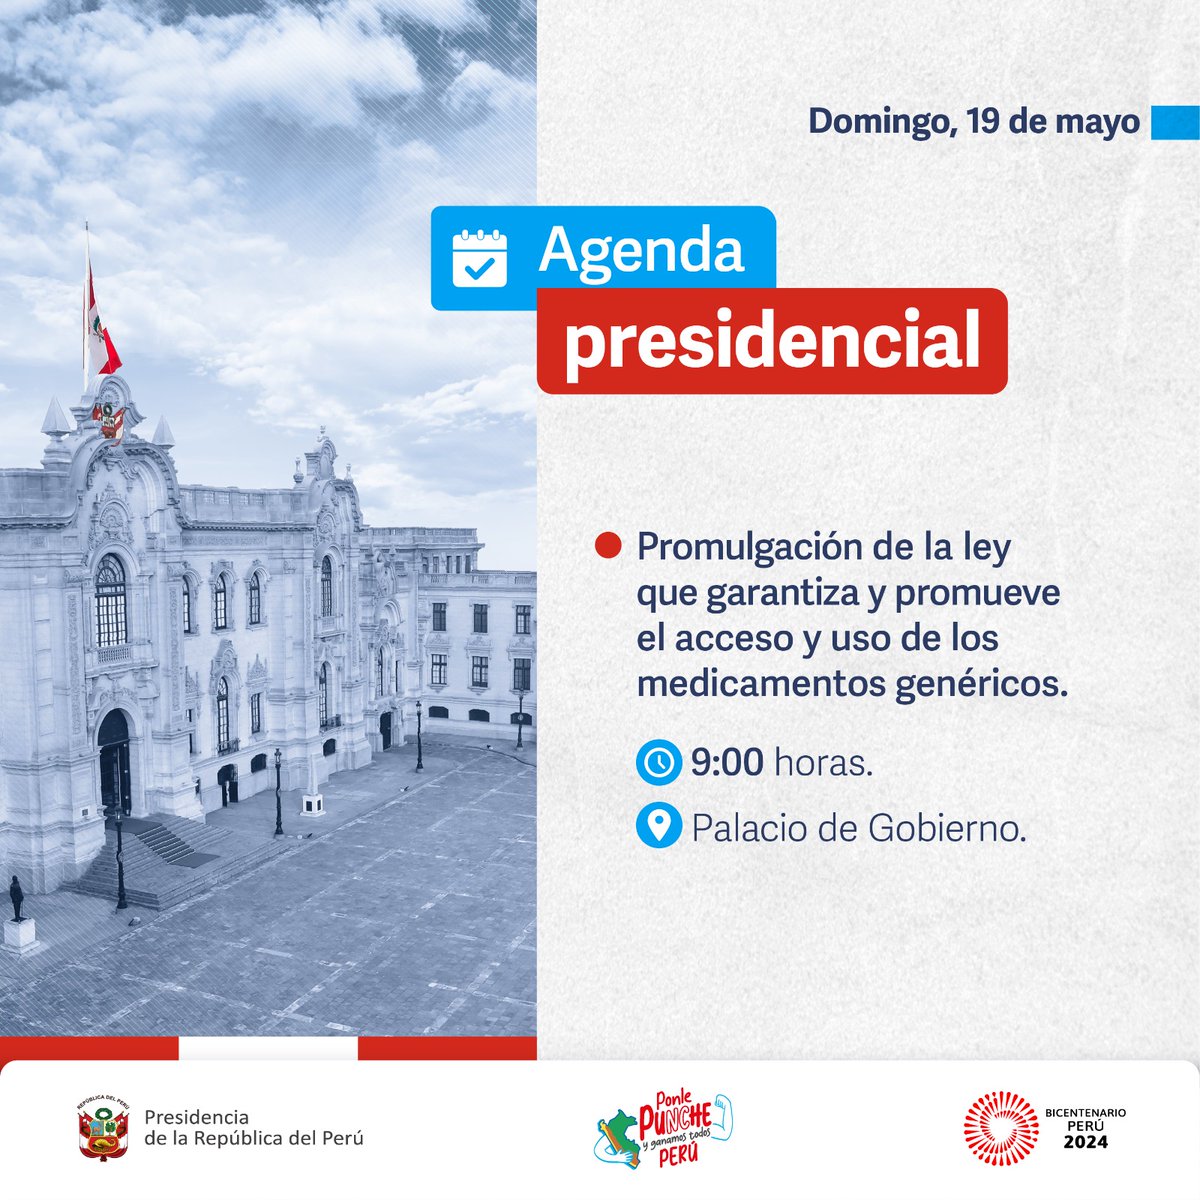 🇵🇪 #AgendaPresidencial | La presidenta Dina Ercilia Boluarte Zegarra participa en la ceremonia de promulgación de la ley que garantiza y promueve el acceso y uso de los medicamentos genéricos.  #PonlePunchePerú 💪 #BicentenarioPerú2024